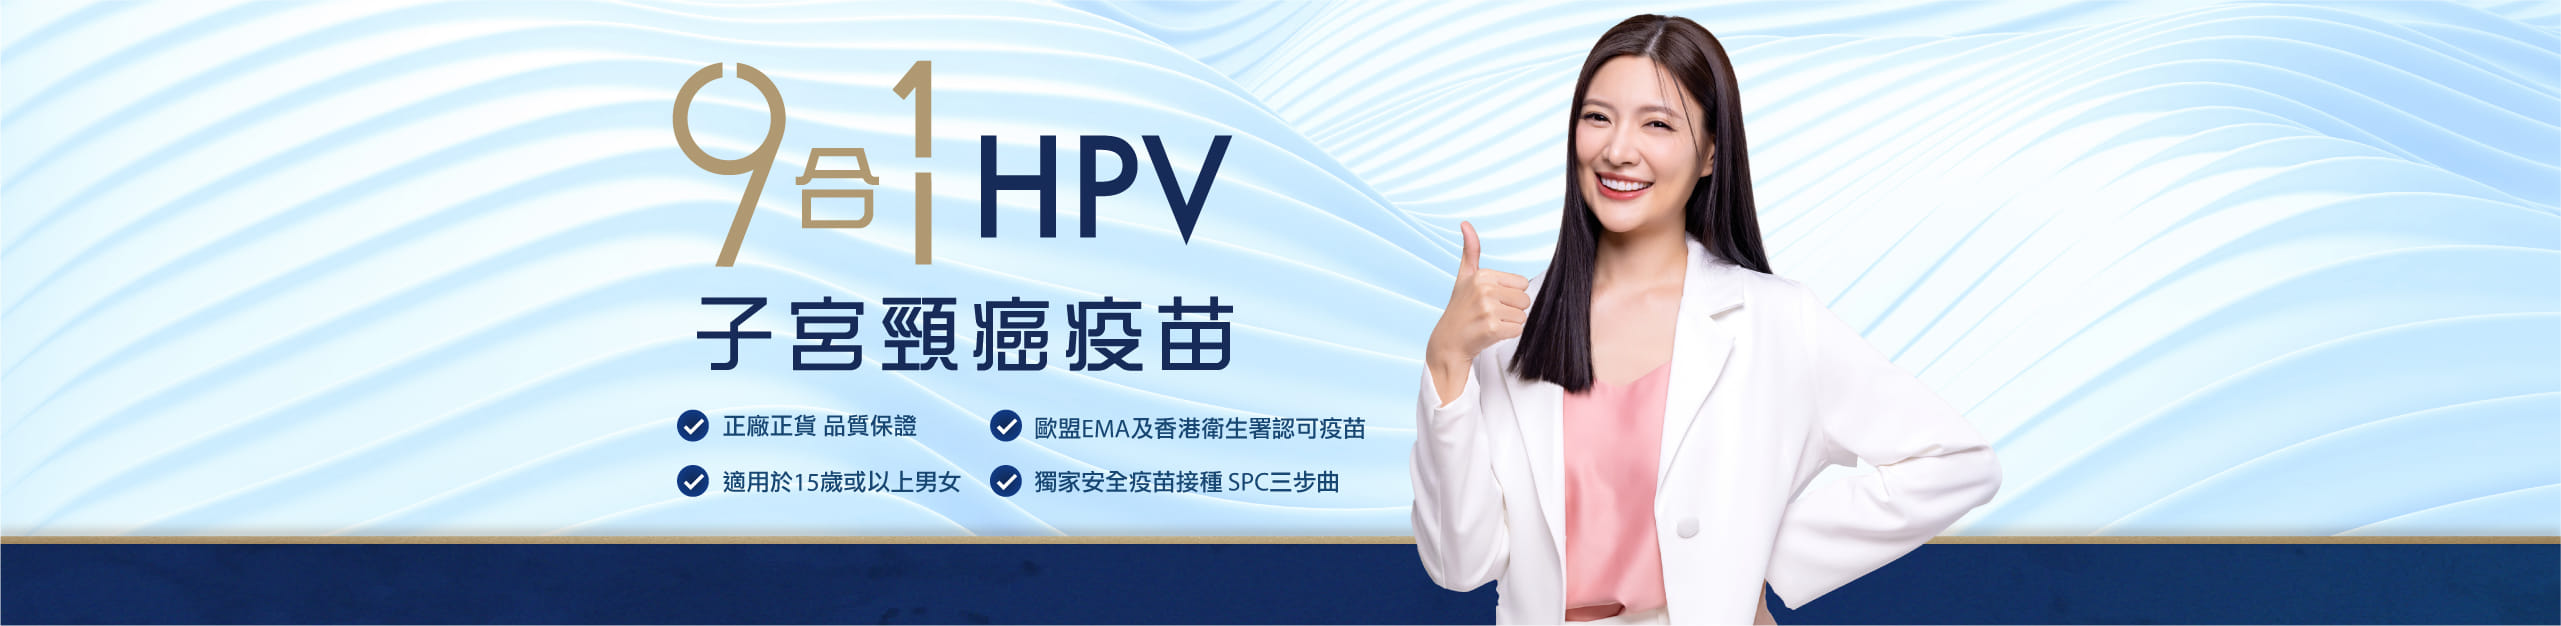 HPV 9合1子宮頸癌疫苗